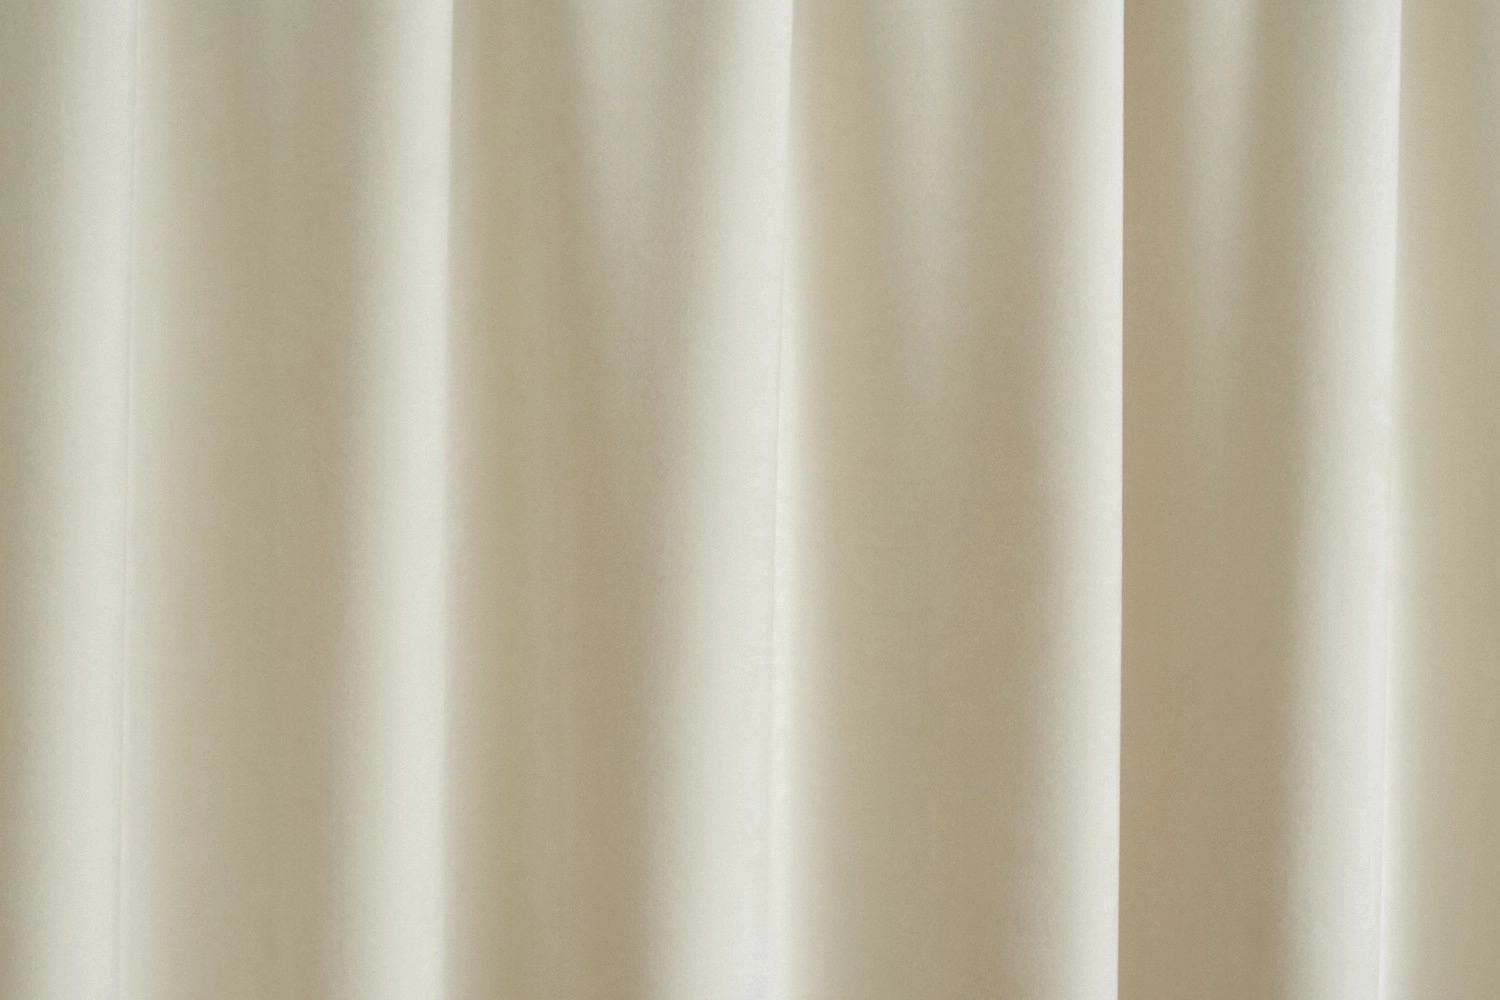 Design sötétítő függöny textil világos beige színben 150cm széles